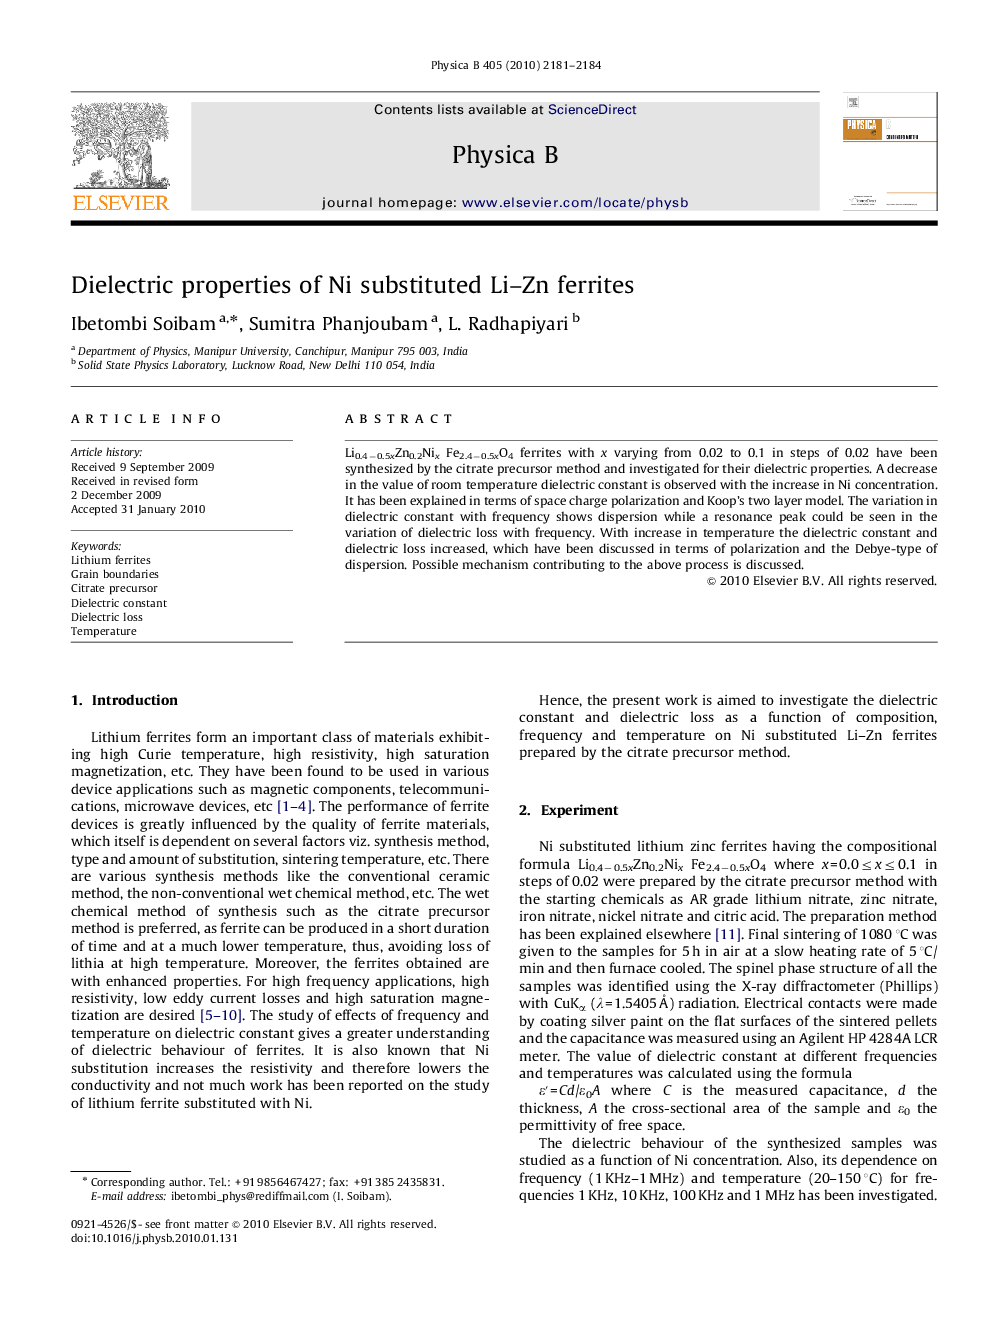 Dielectric properties of Ni substituted Li-Zn ferrites